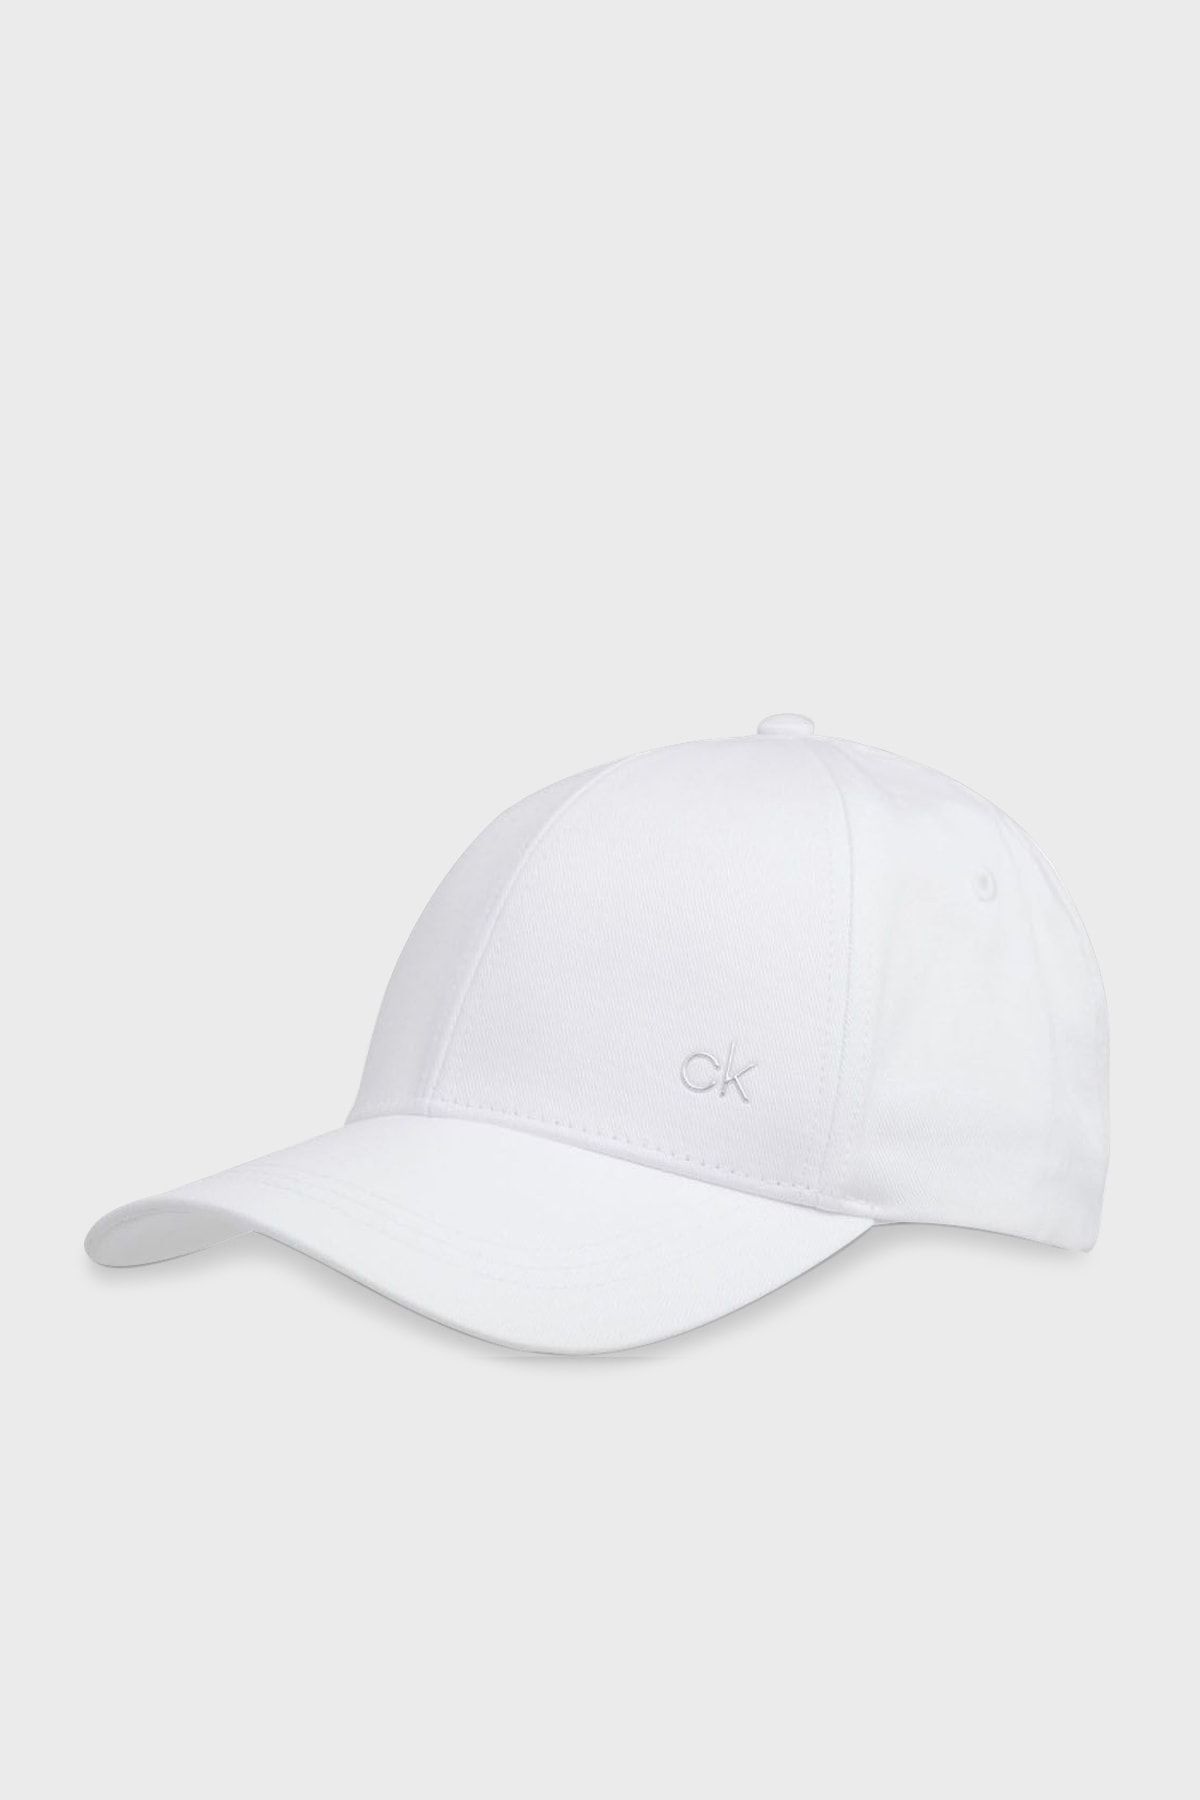 Calvin Klein Logolu Organik Pamuk Şapka Erkek Şapka K50k507602 Yaf